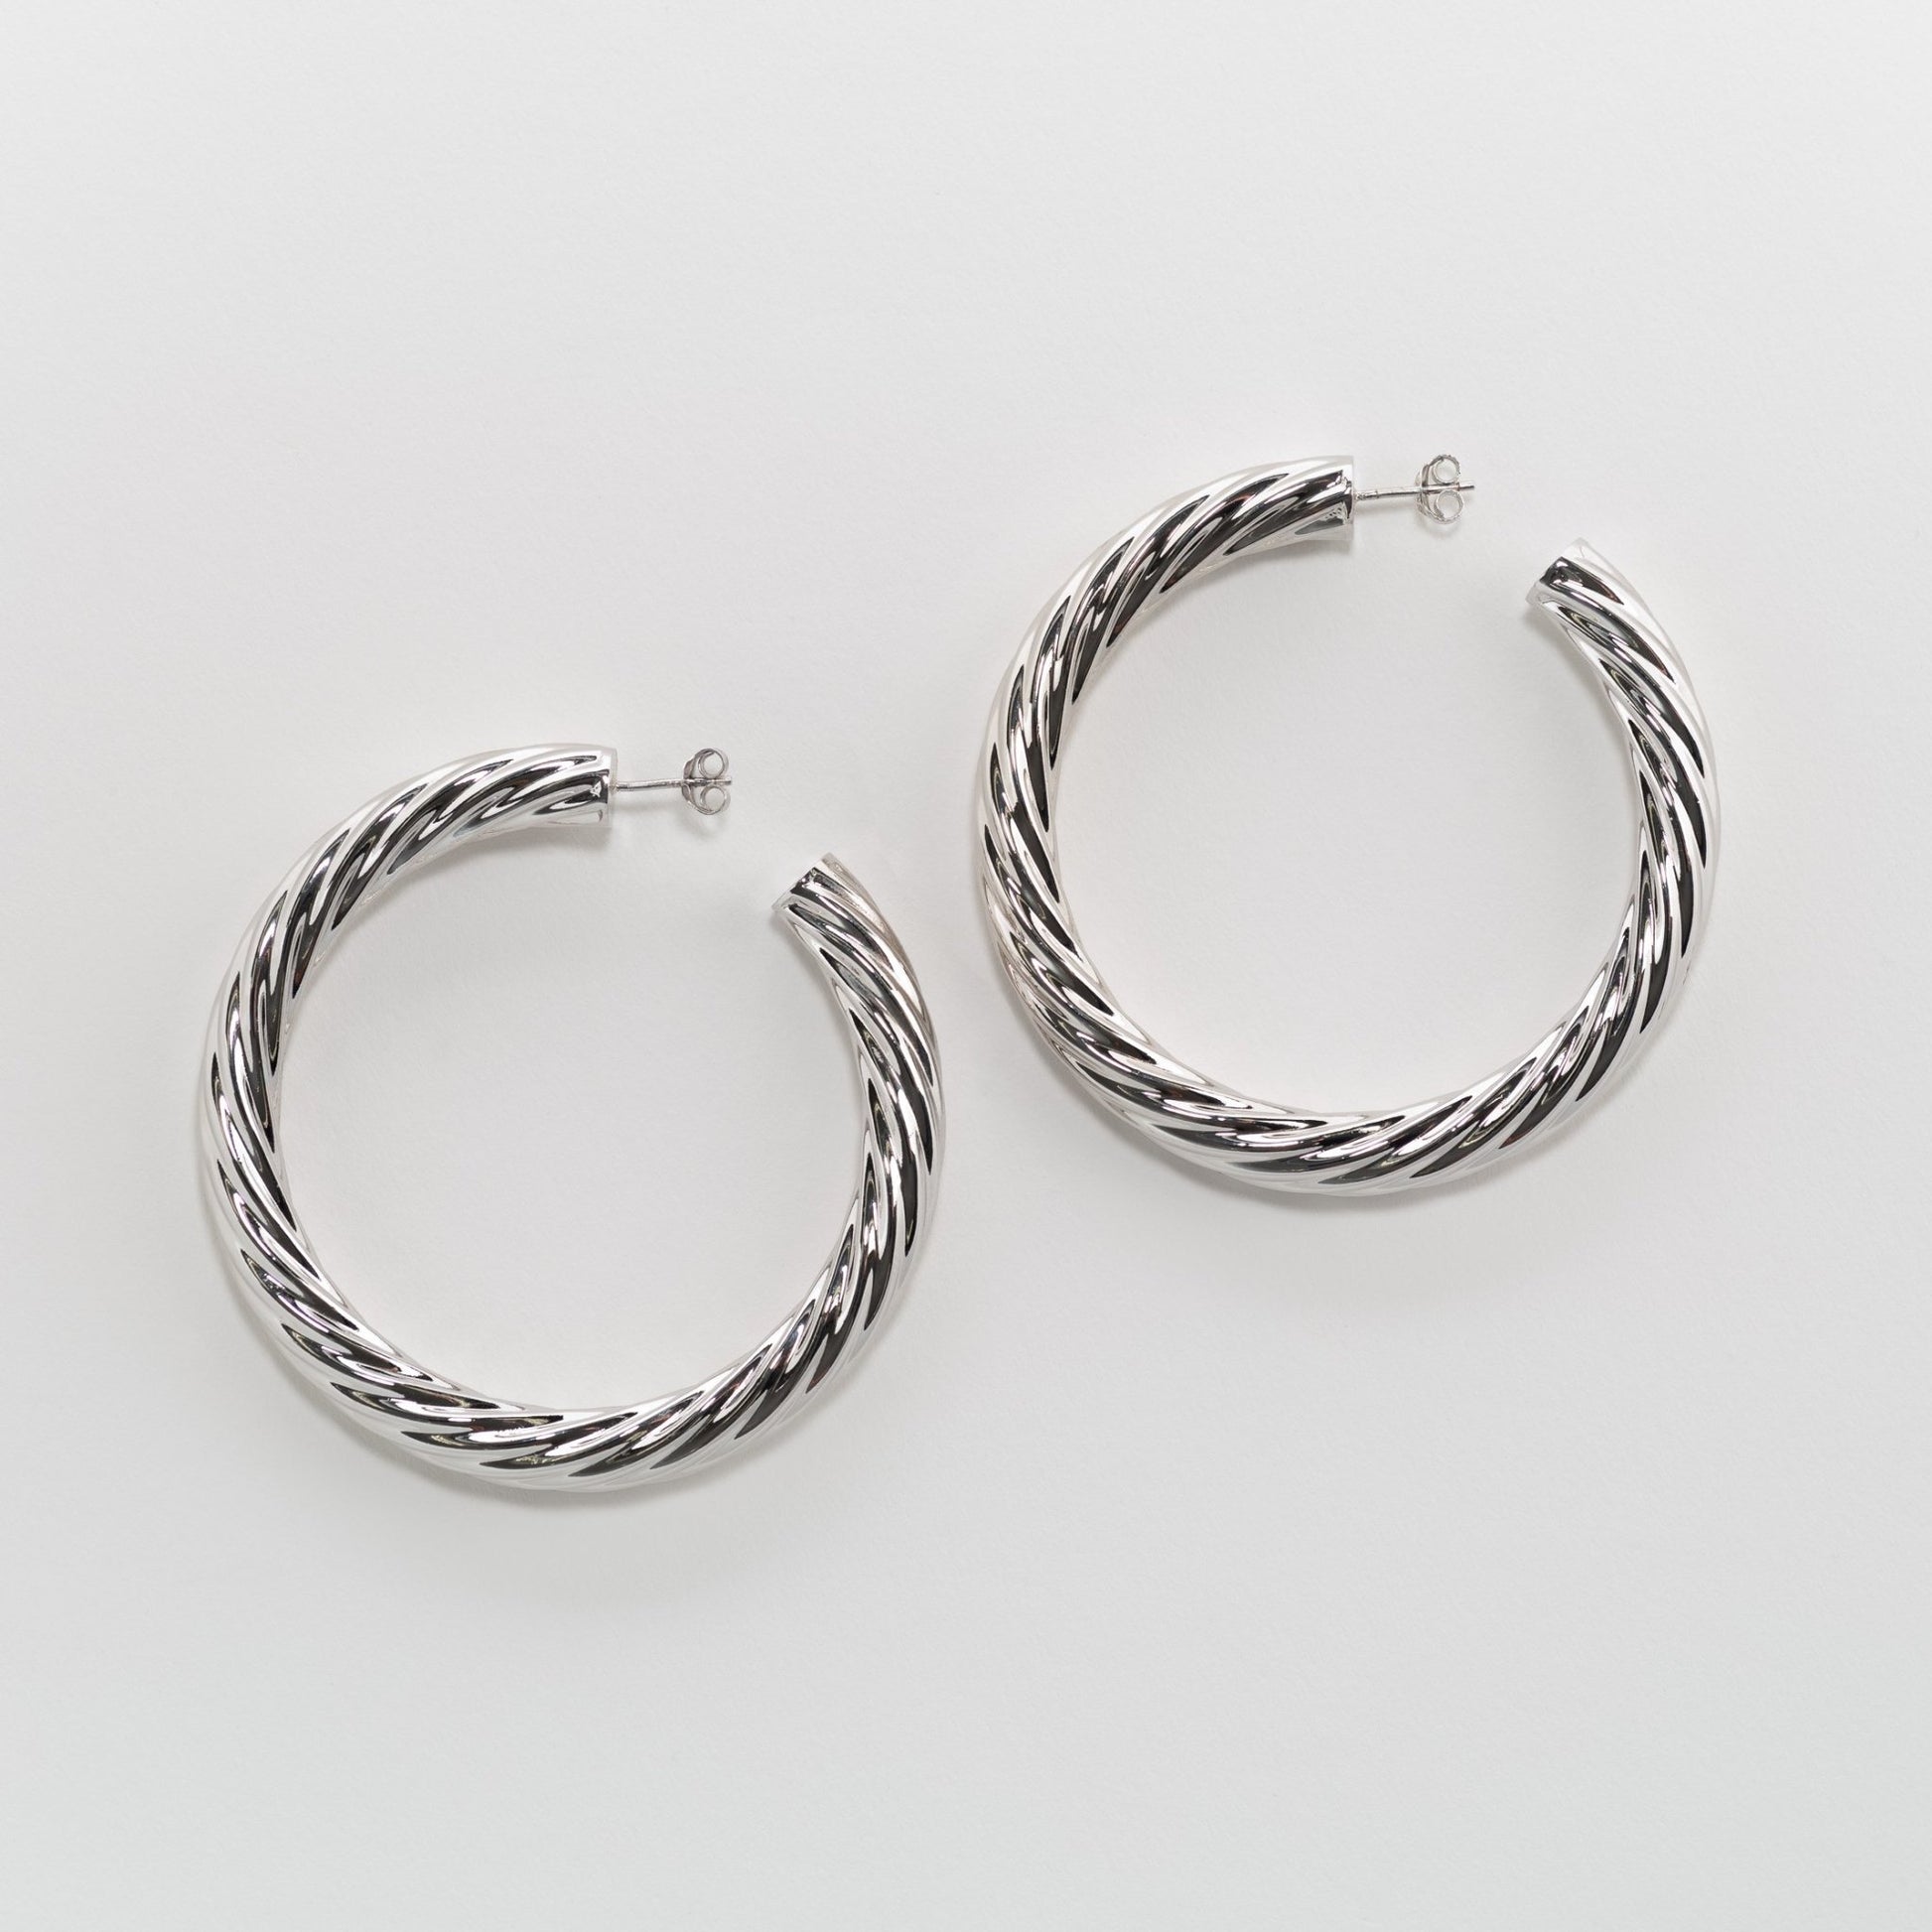 2.5" Twist Hoops in Silver - Machete Jewelry